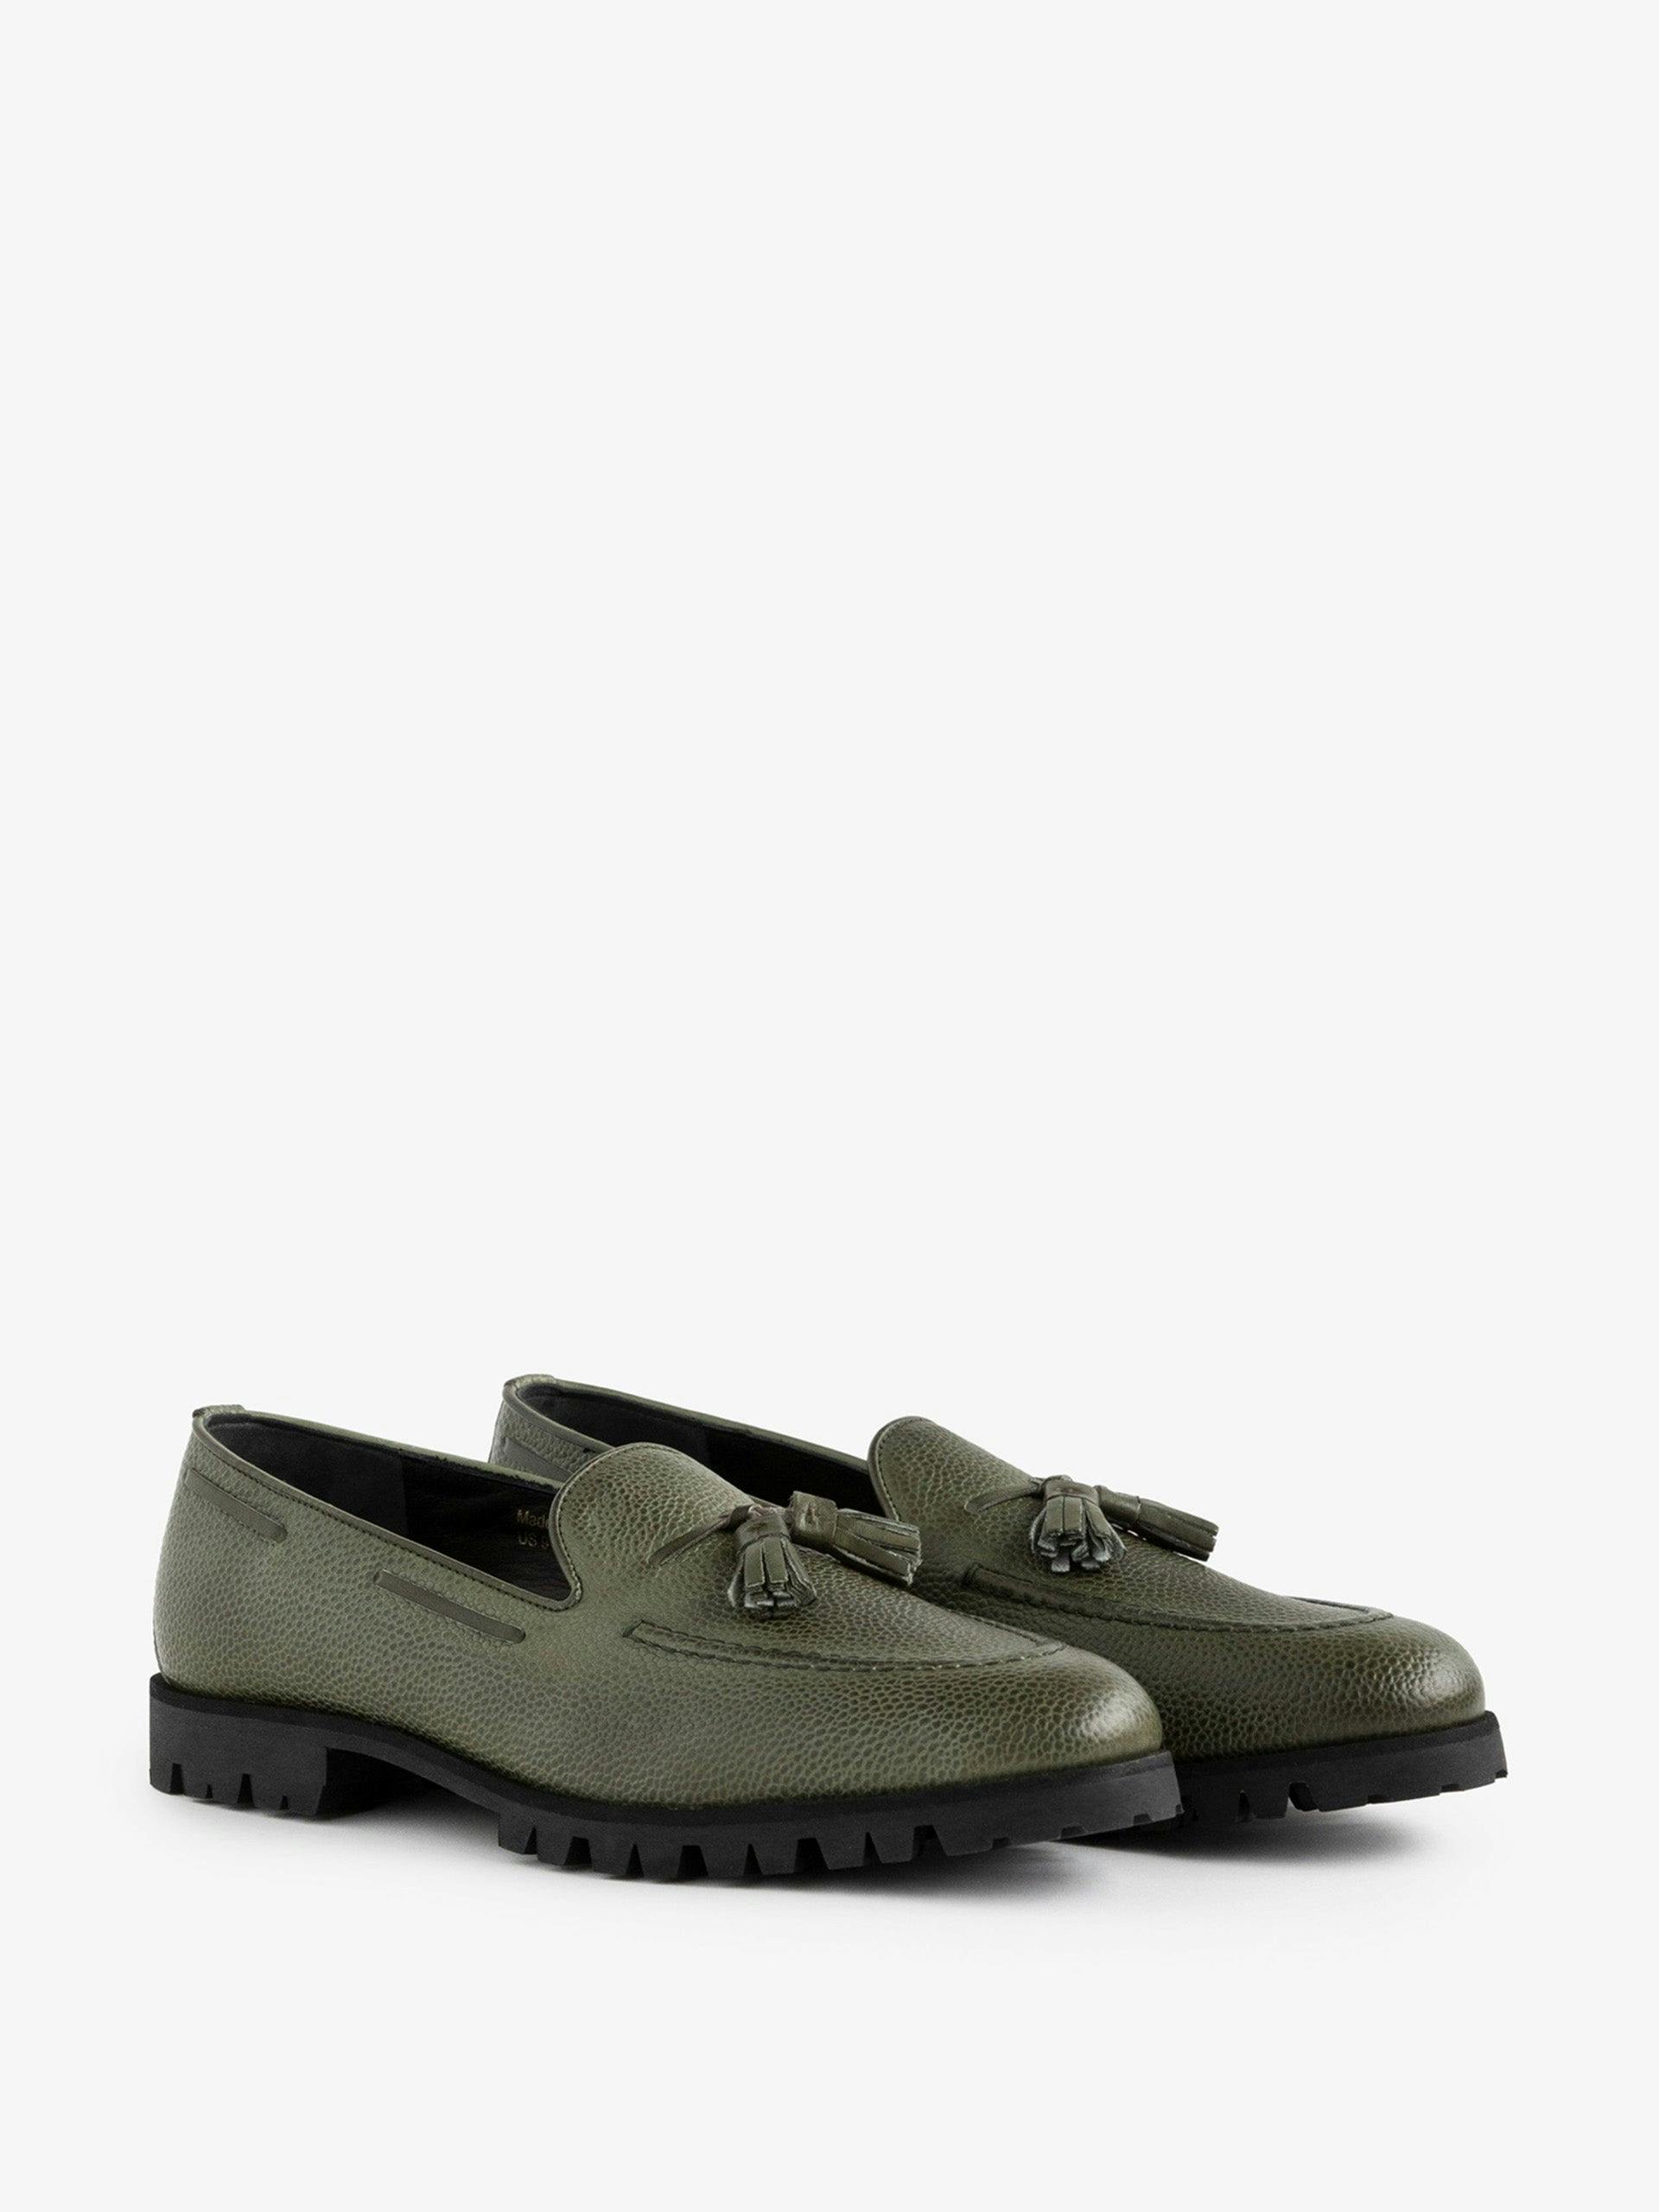 Tassel green loafers